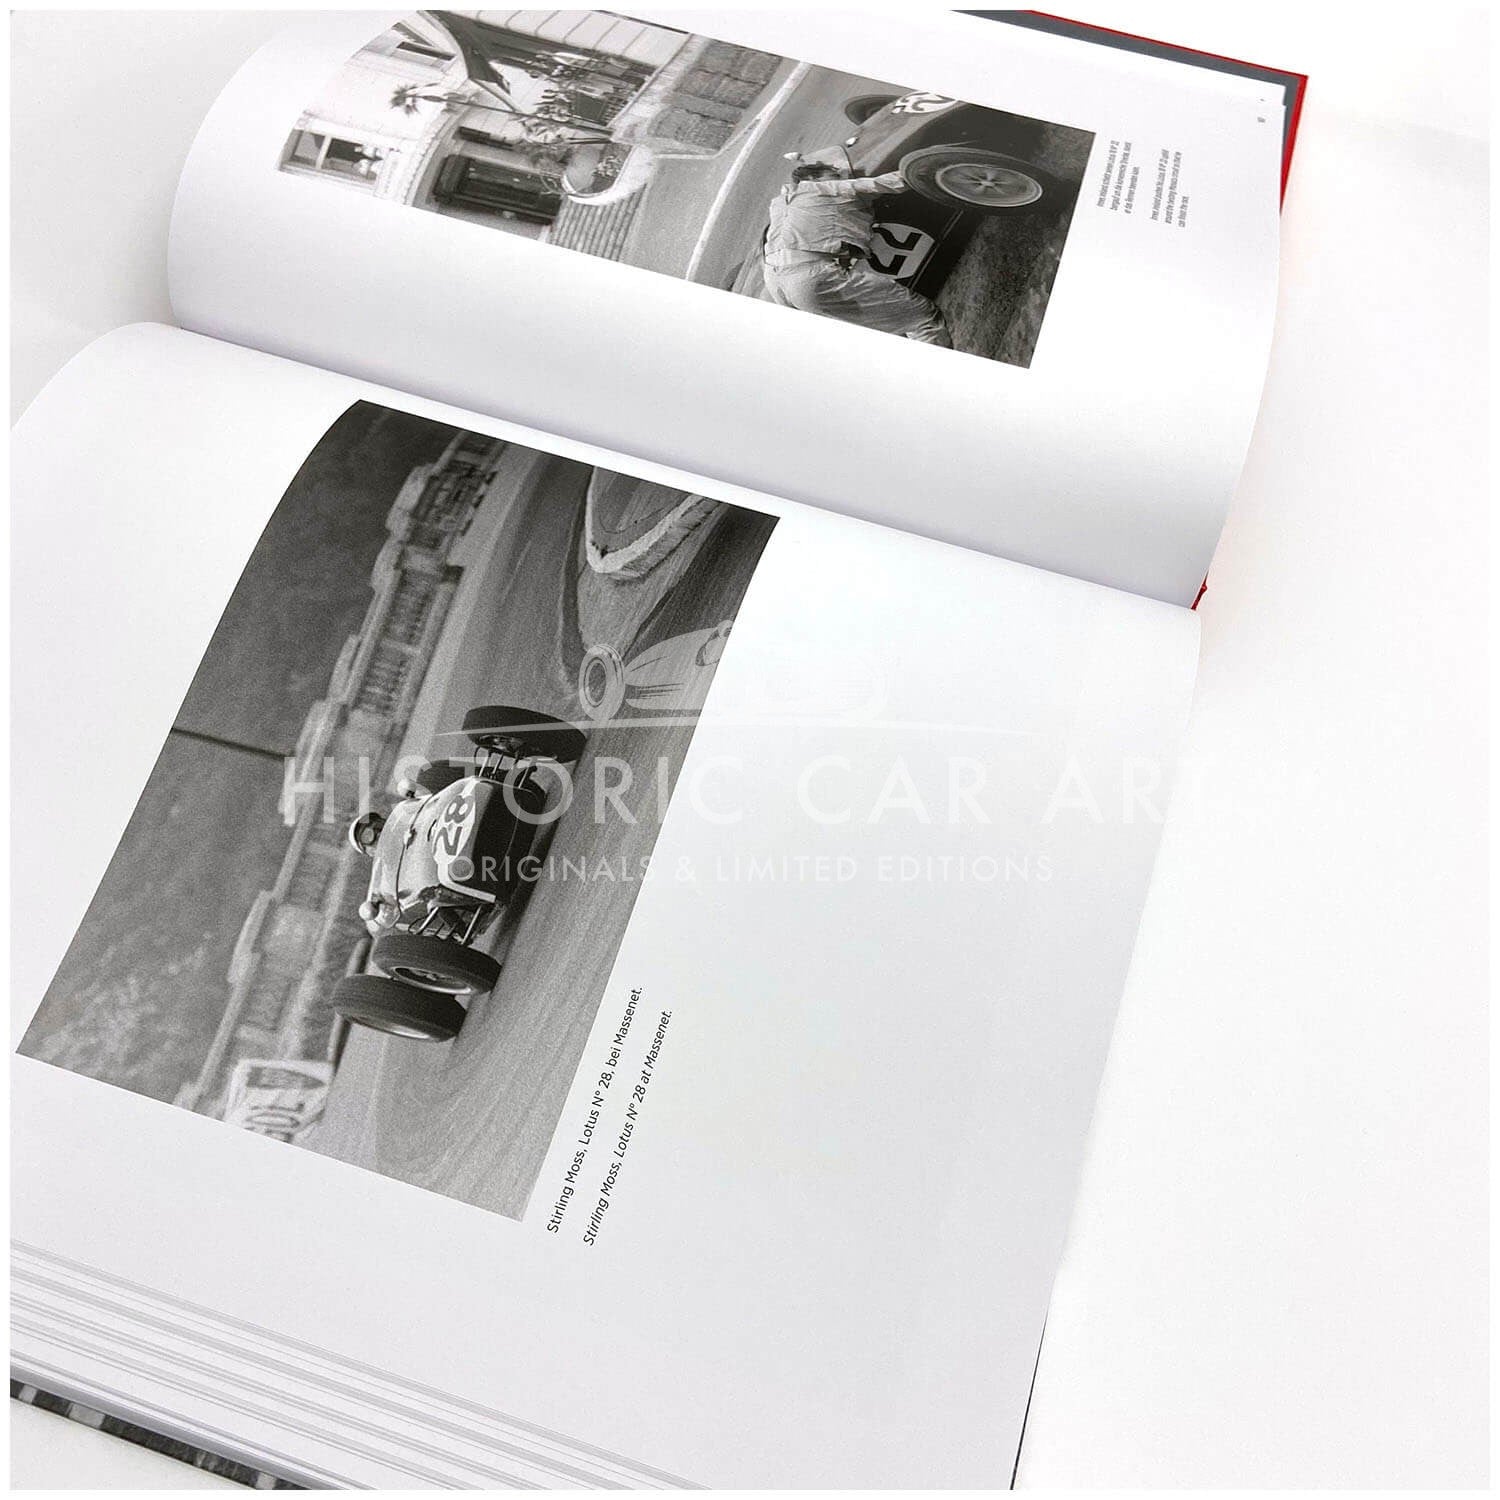 Monaco Motor Racing | Book & Print